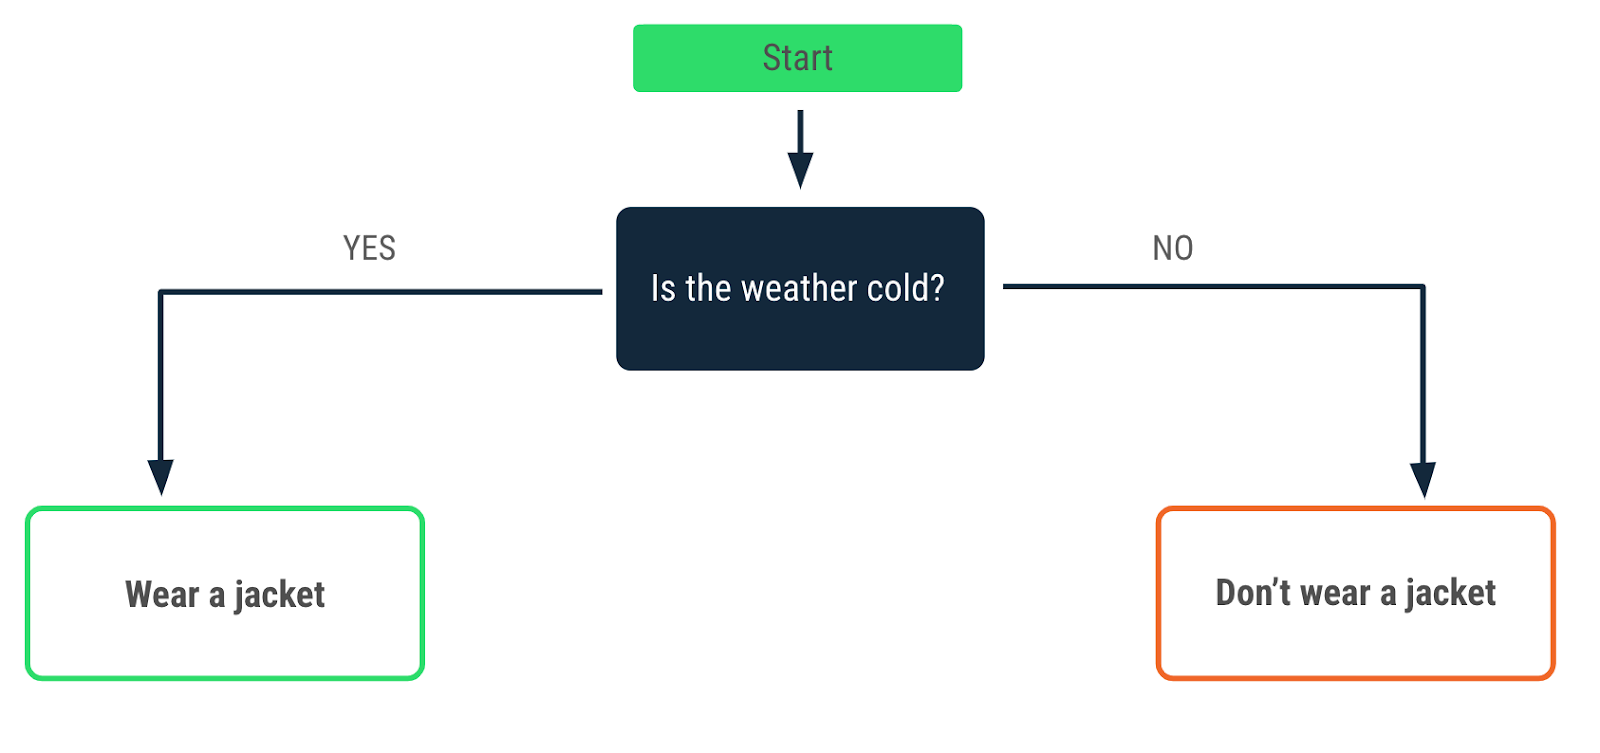 Sơ đồ quy trình mô tả một quyết định được đưa ra khi thời tiết lạnh. Bạn có thể sử dụng mũi tên yes (có) trỏ đến thông báo "Mặc áo khoác" và mũi tên no (không) chỉ vào thông báo "Không mặc áo khoác".